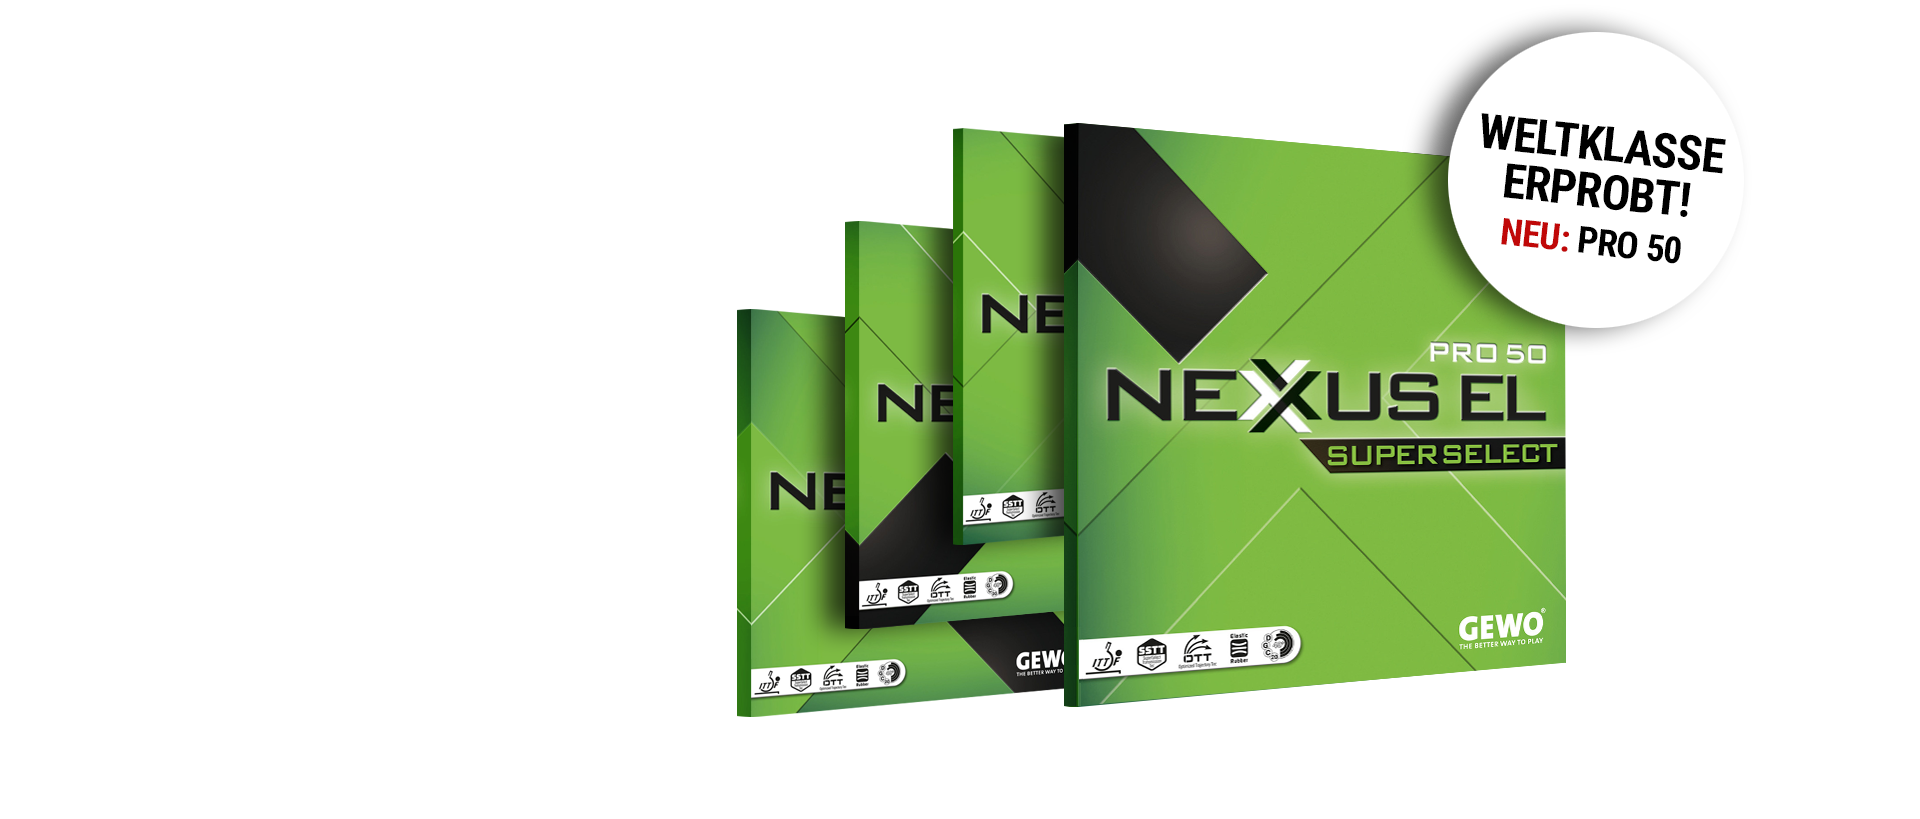 vier NEXXUS EL PRO 50 Beläge und der Text:  Weltklasse erprobt, NEU Pro 50. 